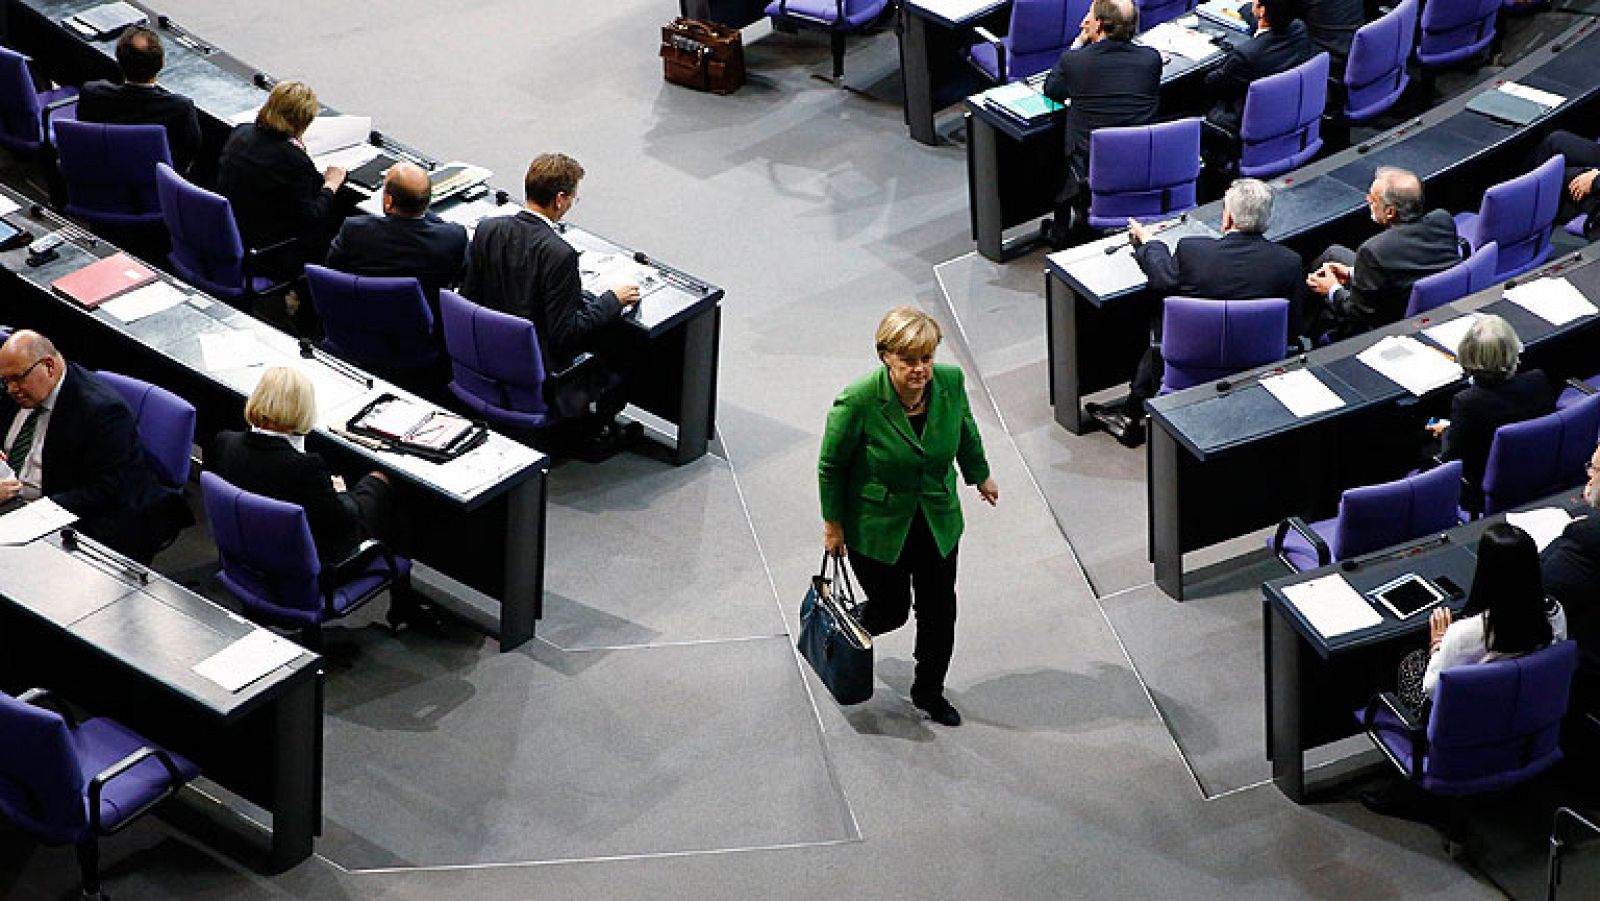  La canciller alemana, Angela Merkel, ha calificado ante el pleno del Bundestag (cámara baja) de ¿graves¿ las acusaciones de espionaje que pesan sobre Washington, ha exigido explicaciones y ha asegurado que es preciso "recuperar la "confianza" entre ambos lados del Atlántico. "Las acusaciones deben ser esclarecidas. Y algo aún más importante: tienen que construirse nuevos lazos de confianza de cara al futuro", ha dicho Merkel.